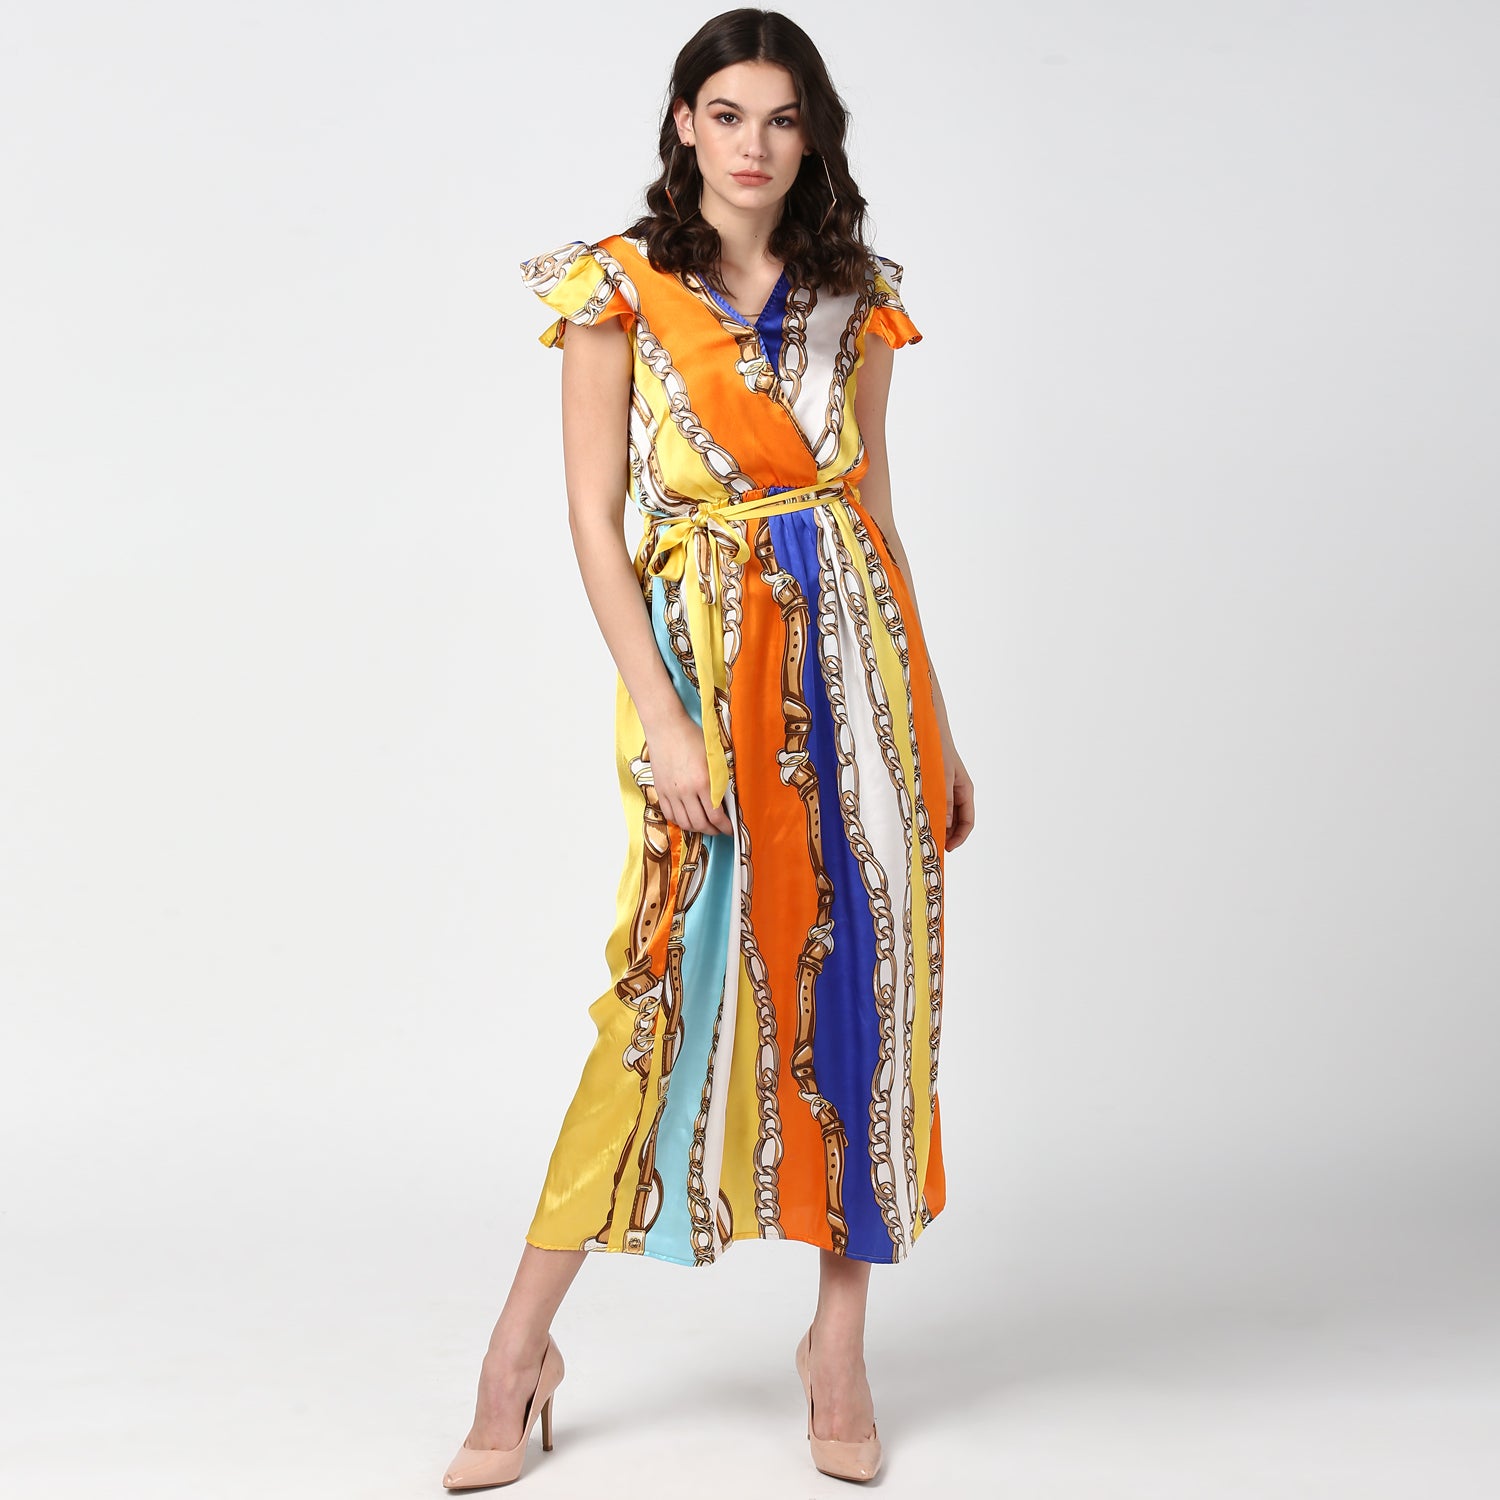 Women's Chain Print Multi Colored Satin Maxi Dress - StyleStone